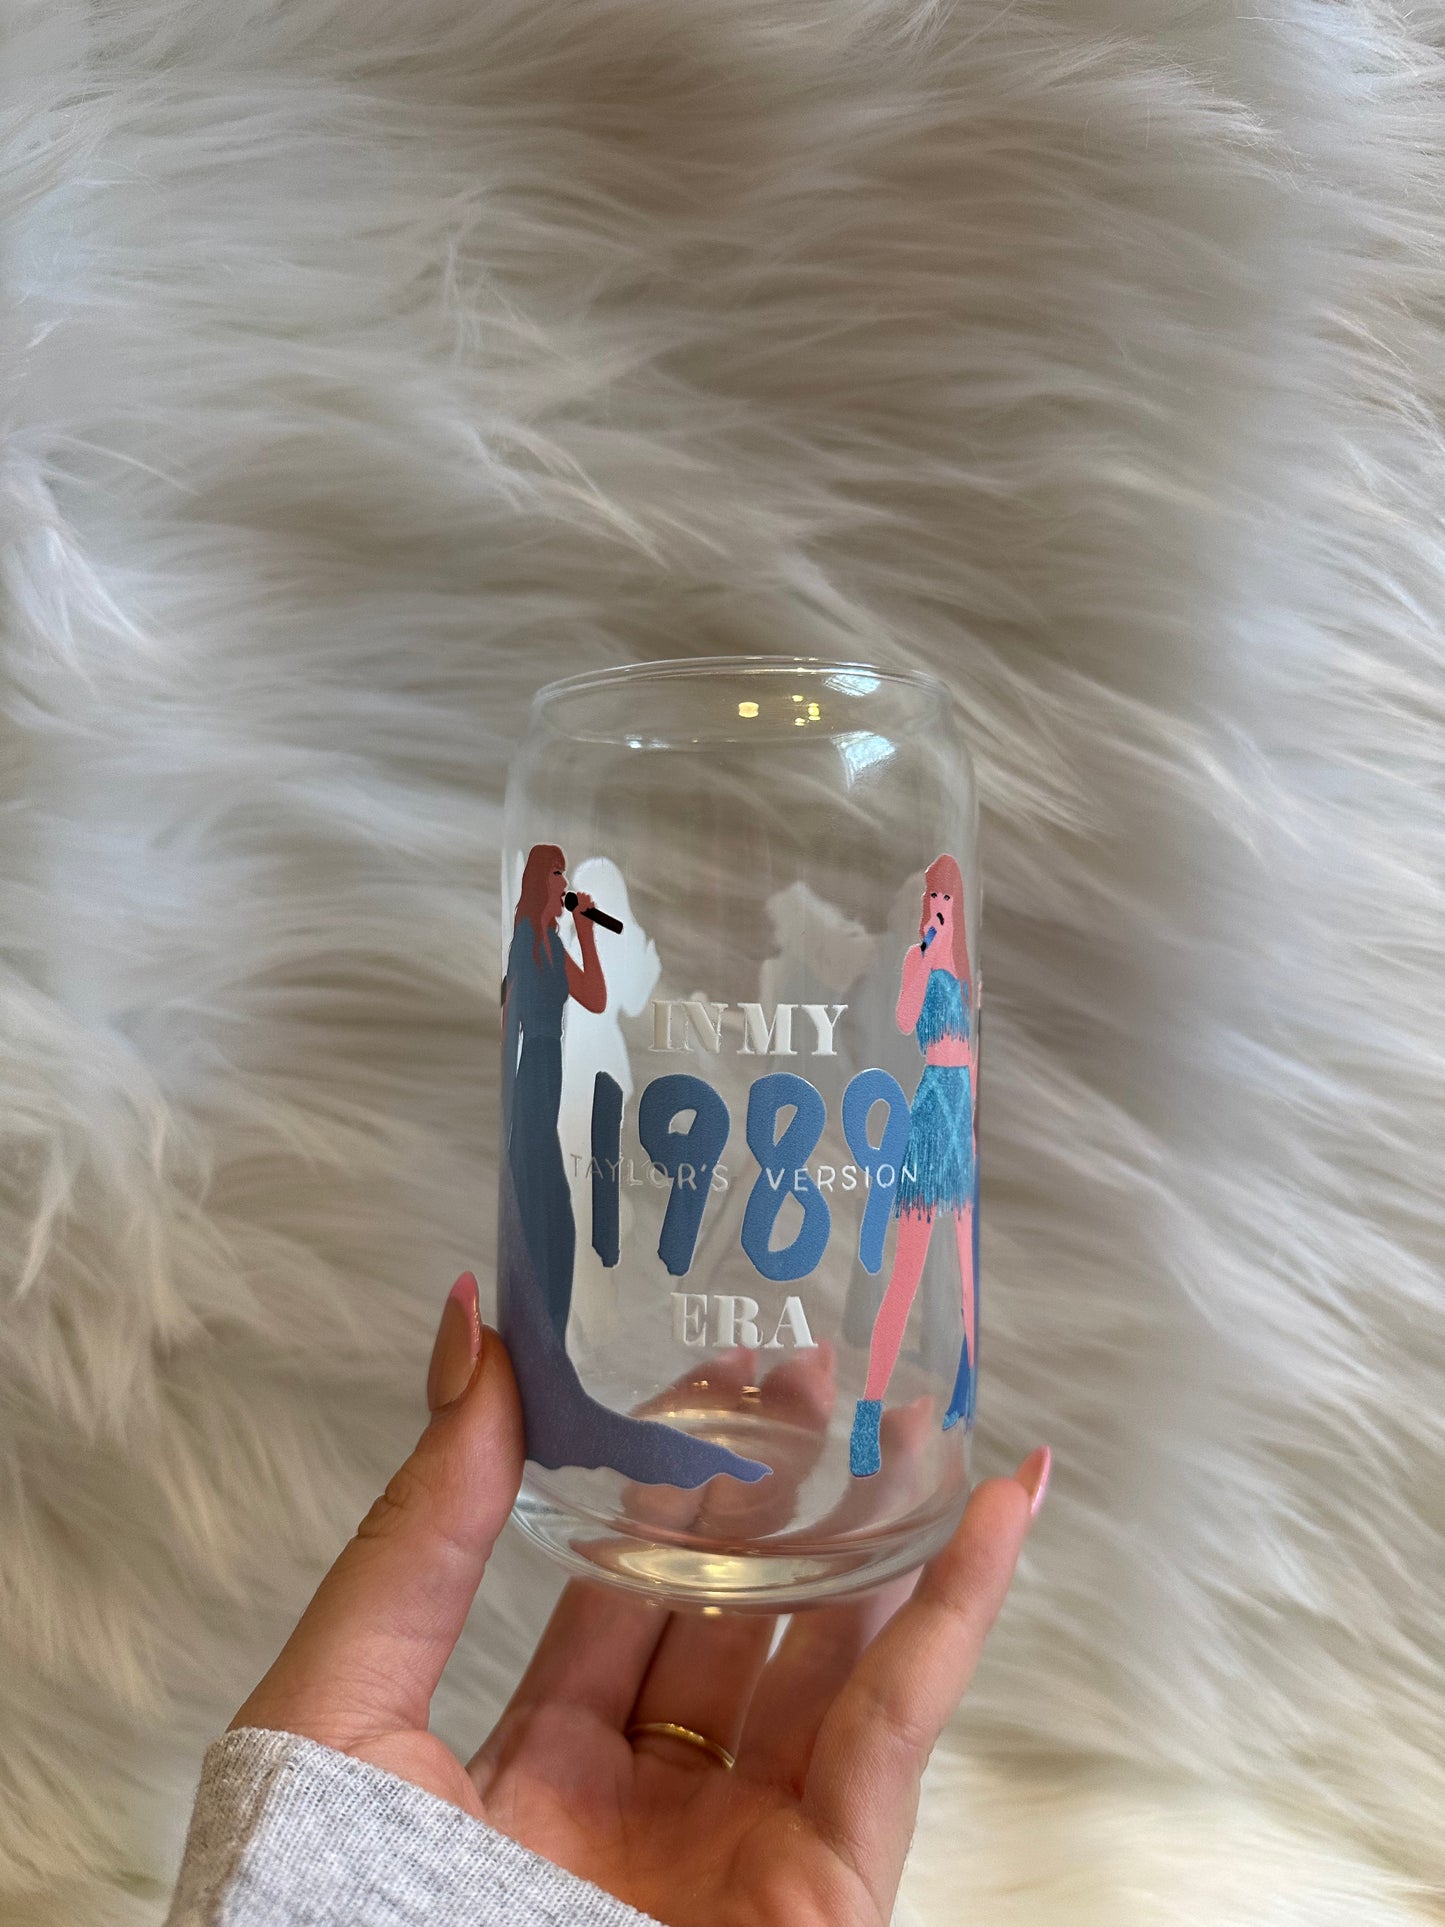 T Swift 1989 in my era glass cup